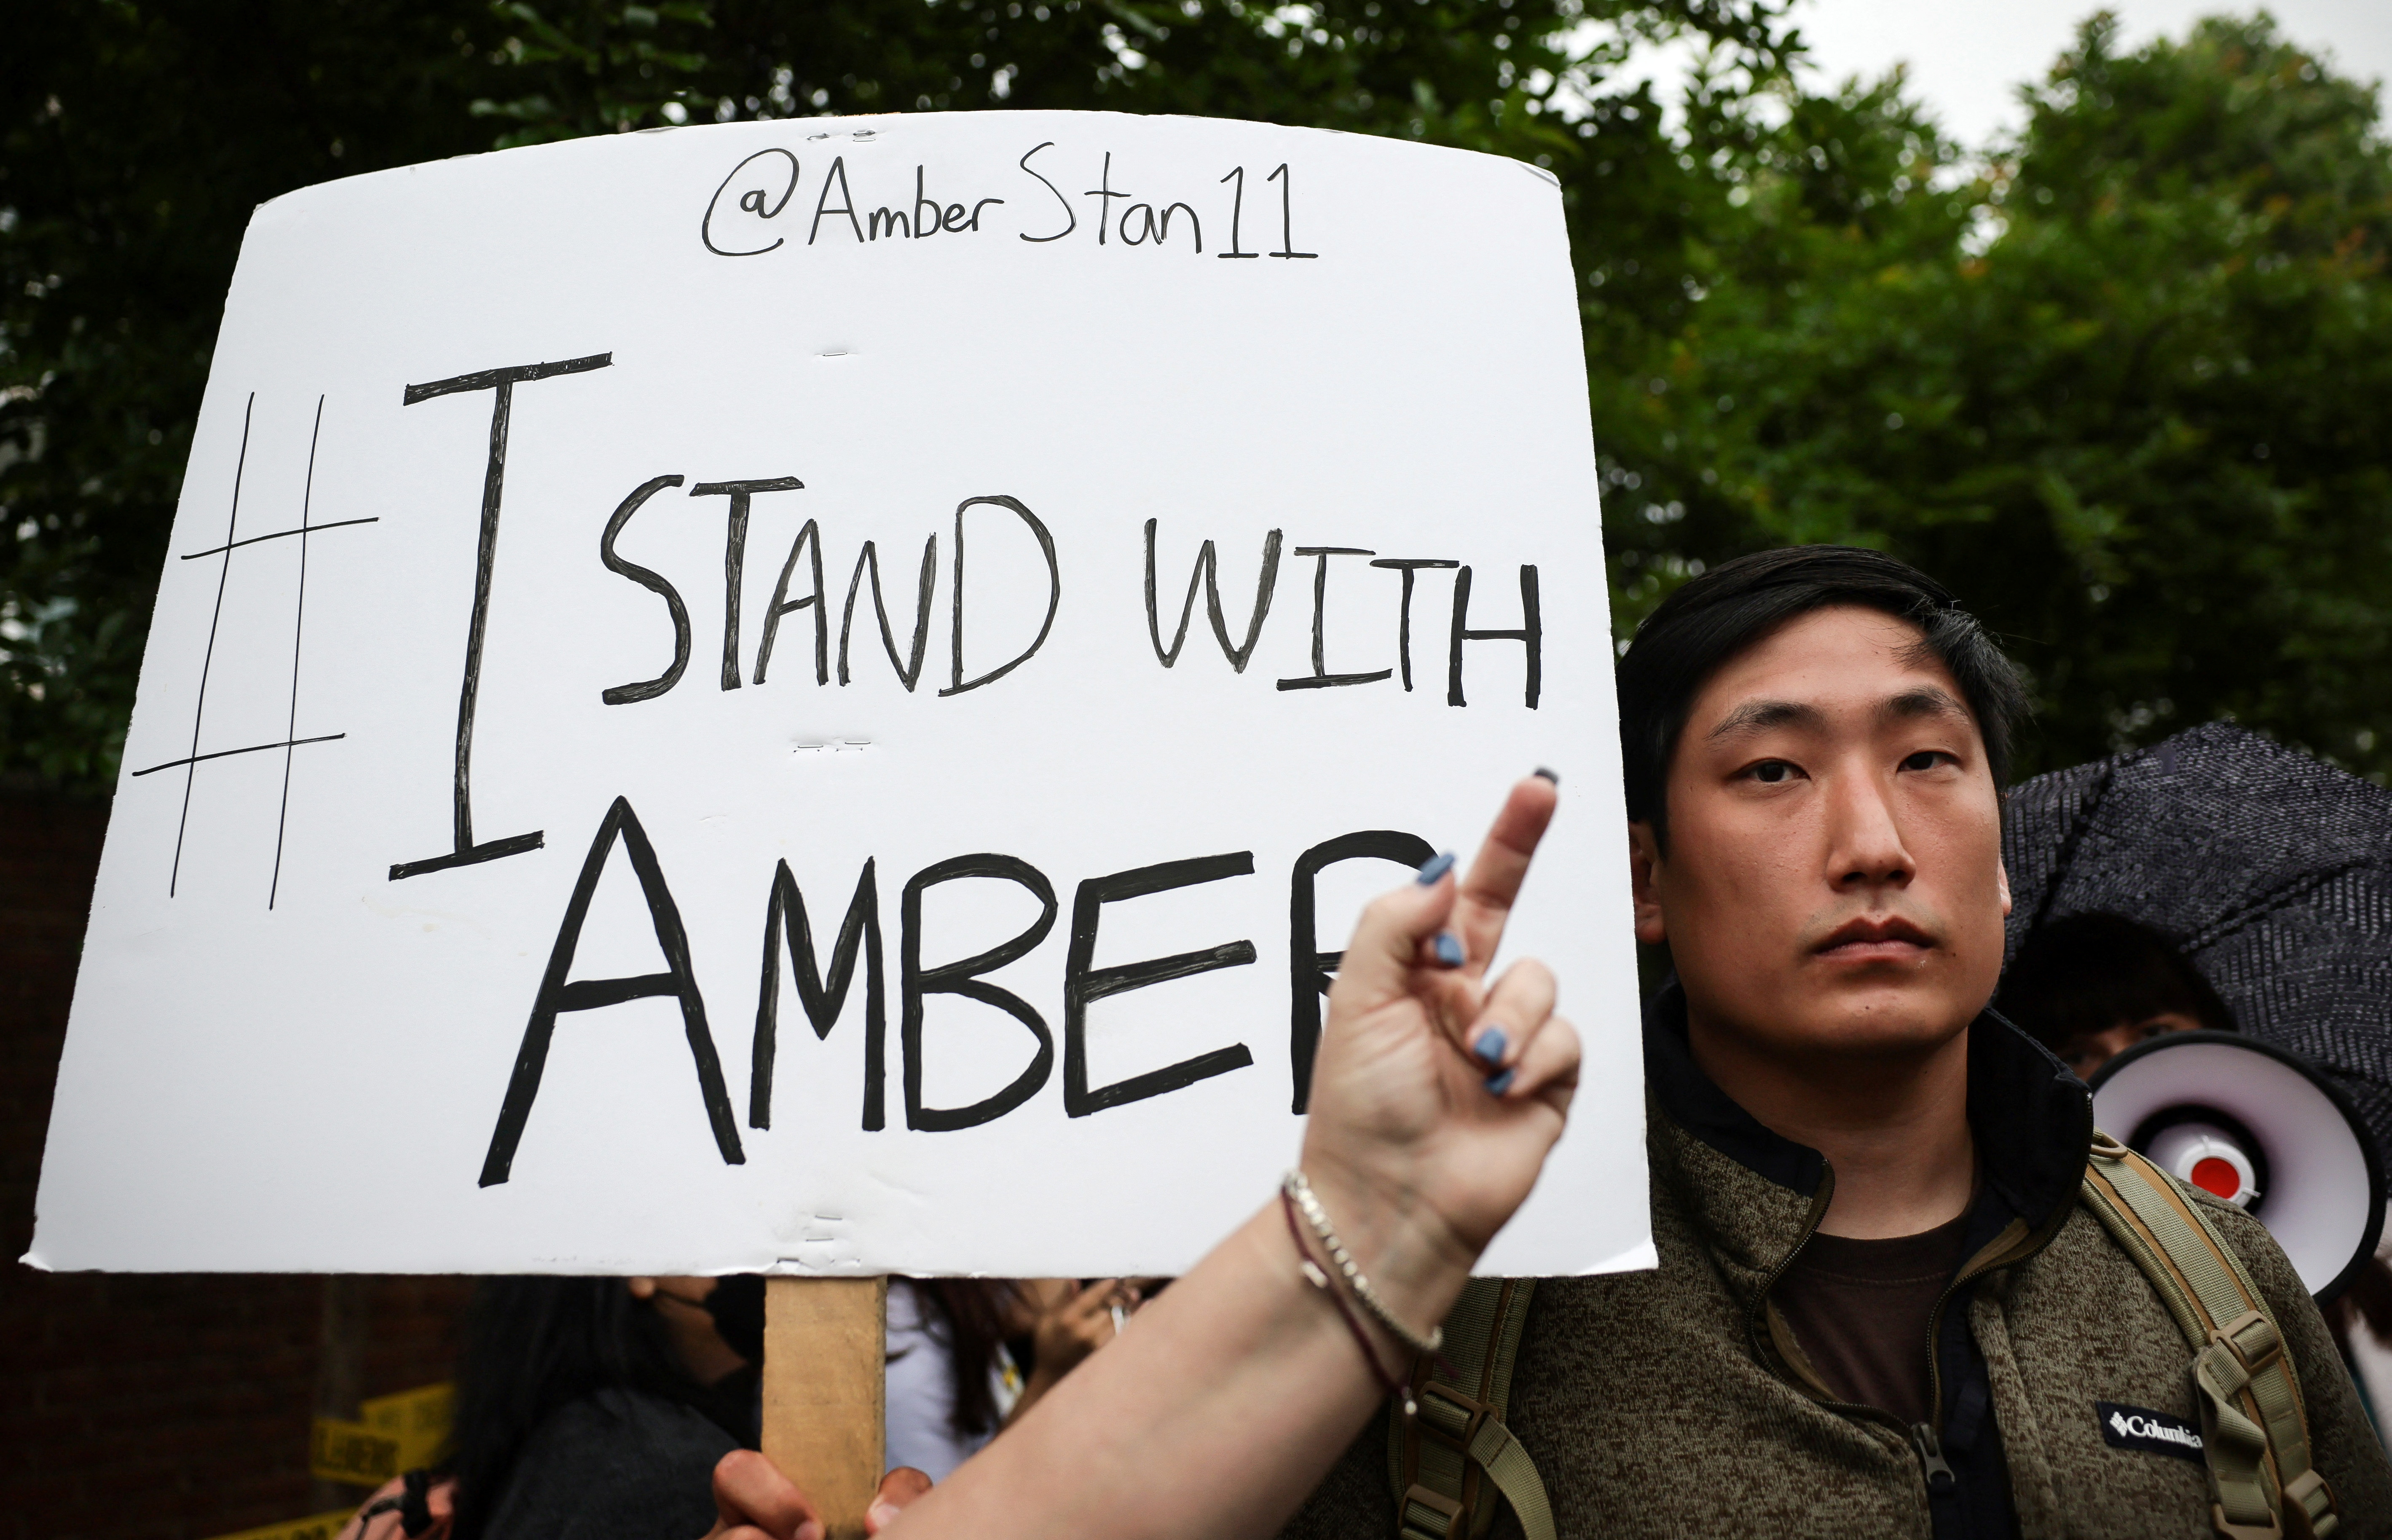 Amber Heard aseguró que al hablar de violencia sexual, sintió la "furia" de la cultura que protege a los hombres acusados (Foto: REUTERS/Evelyn Hockstein)